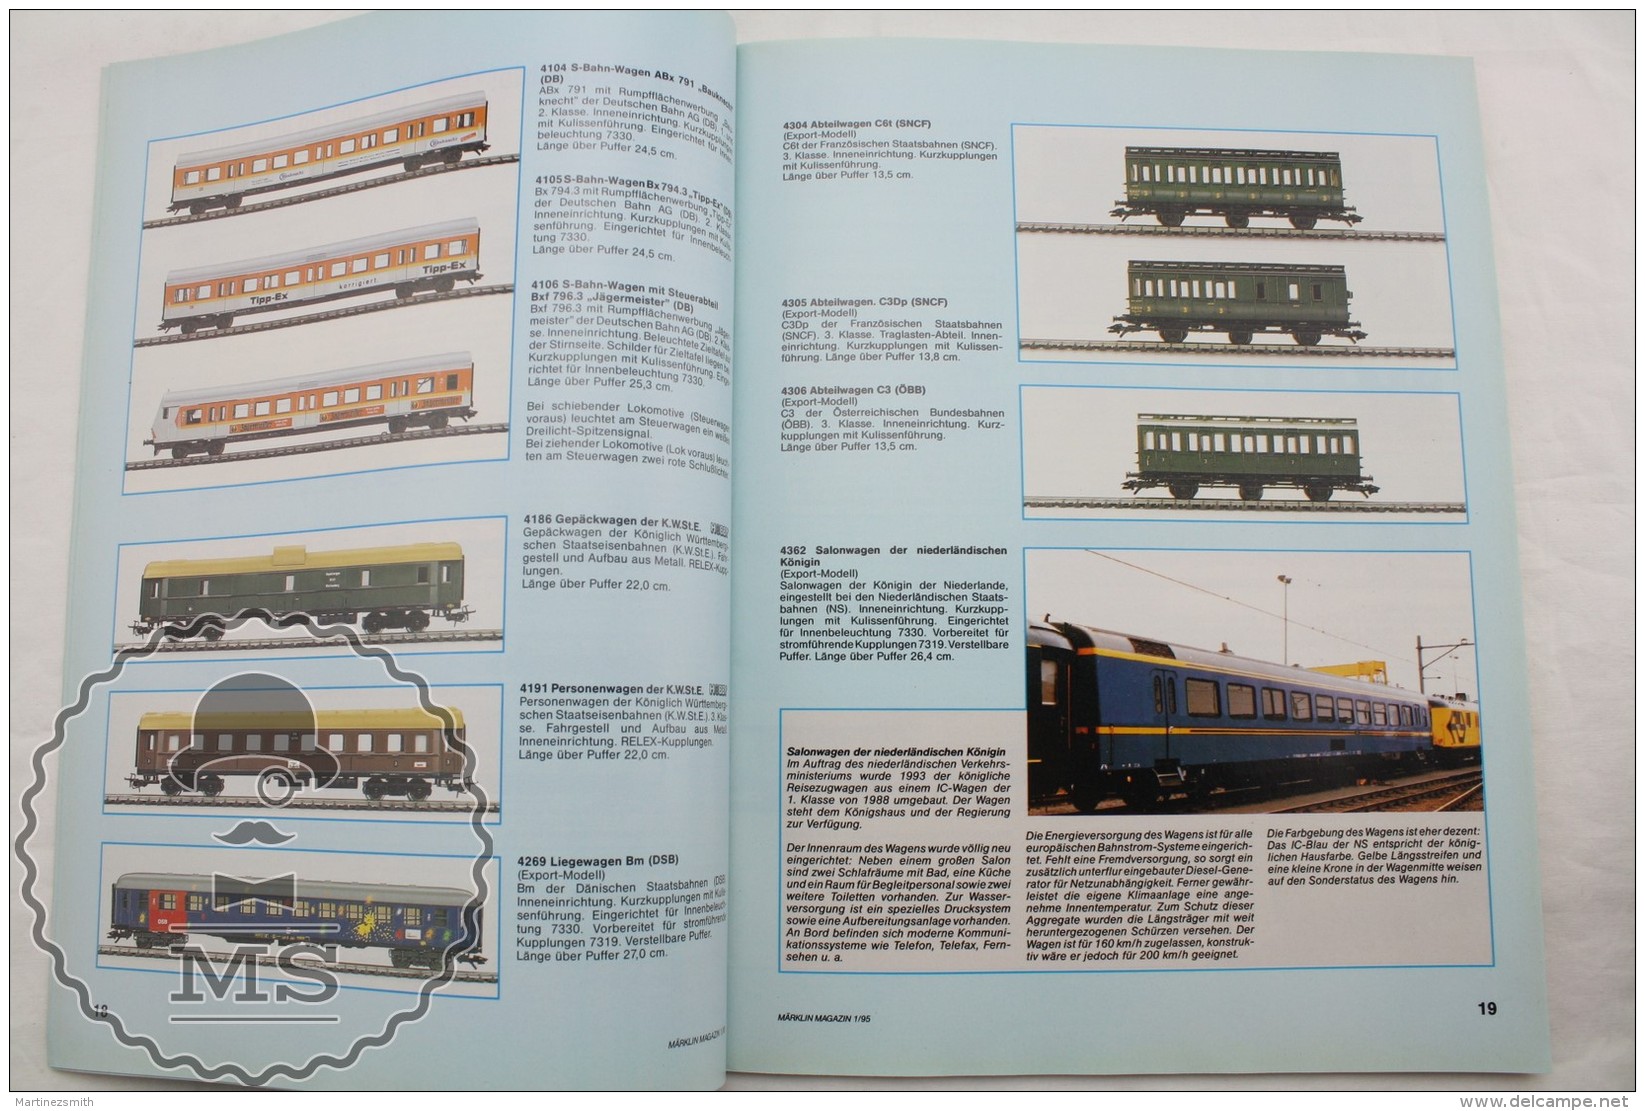 Marklin Magazin  - Railway/ Railroad Train Magazine - German Edition - N&ordm; 1 February/ March 1995 - Railway